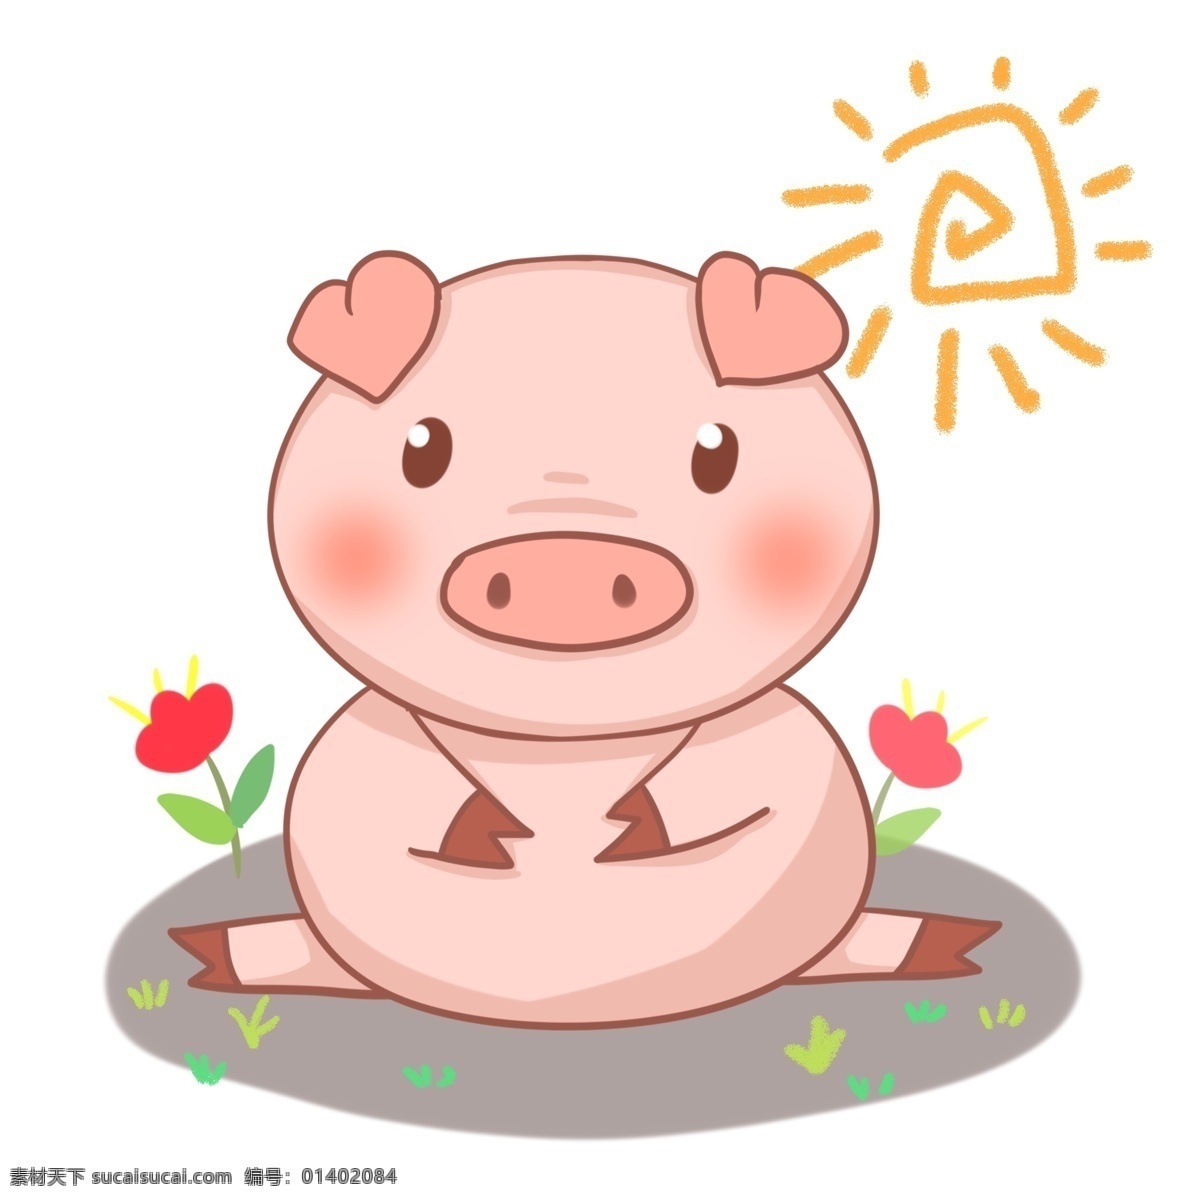 商用 卡通 可爱 坐姿 猪年 手绘 手 账 猪 元素 太阳 小花 粉色